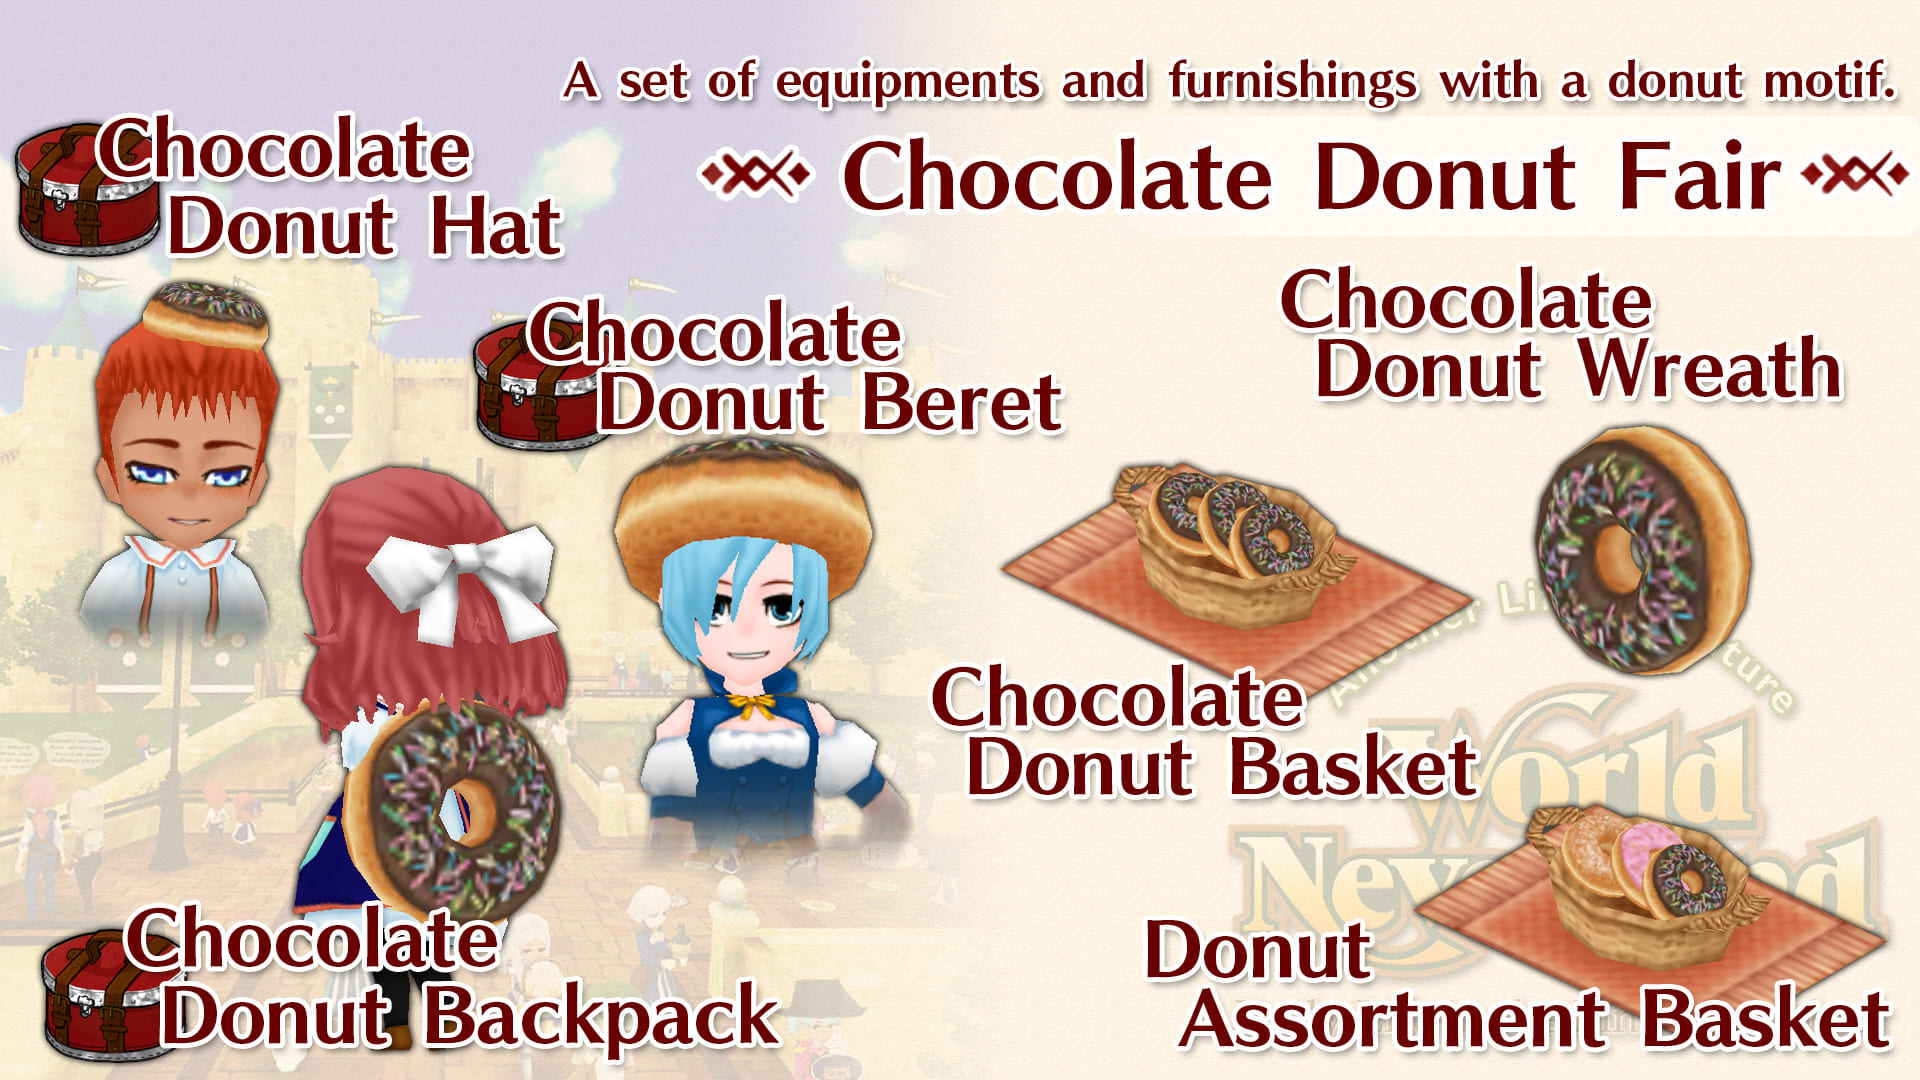 Chocolate Donut Fair